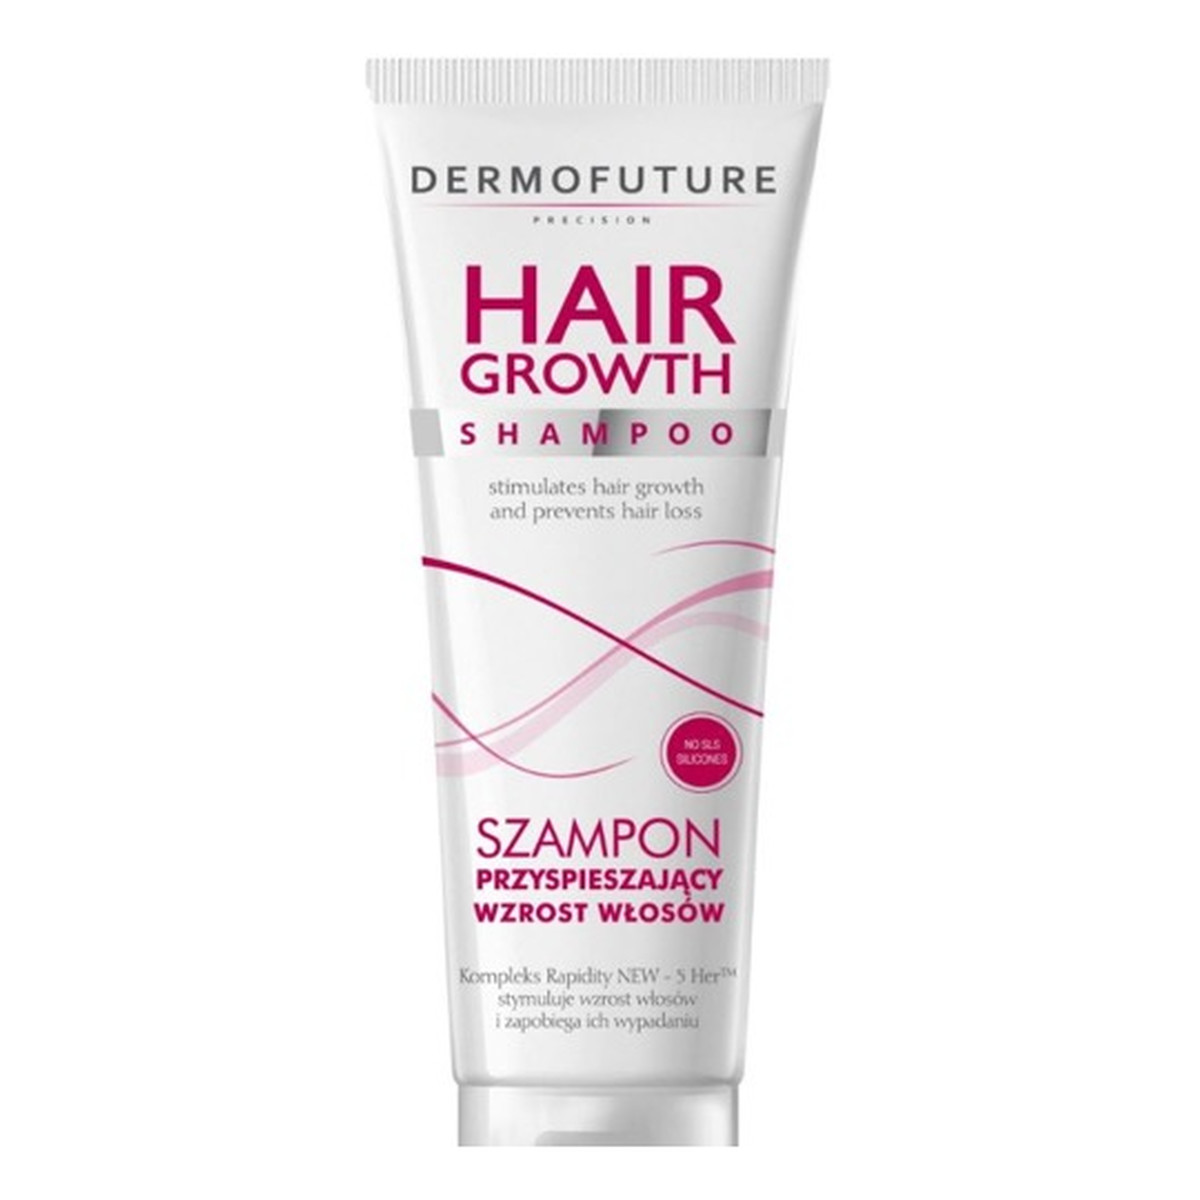 dermofuture szampon przyspieszający wzrost włosów opinie